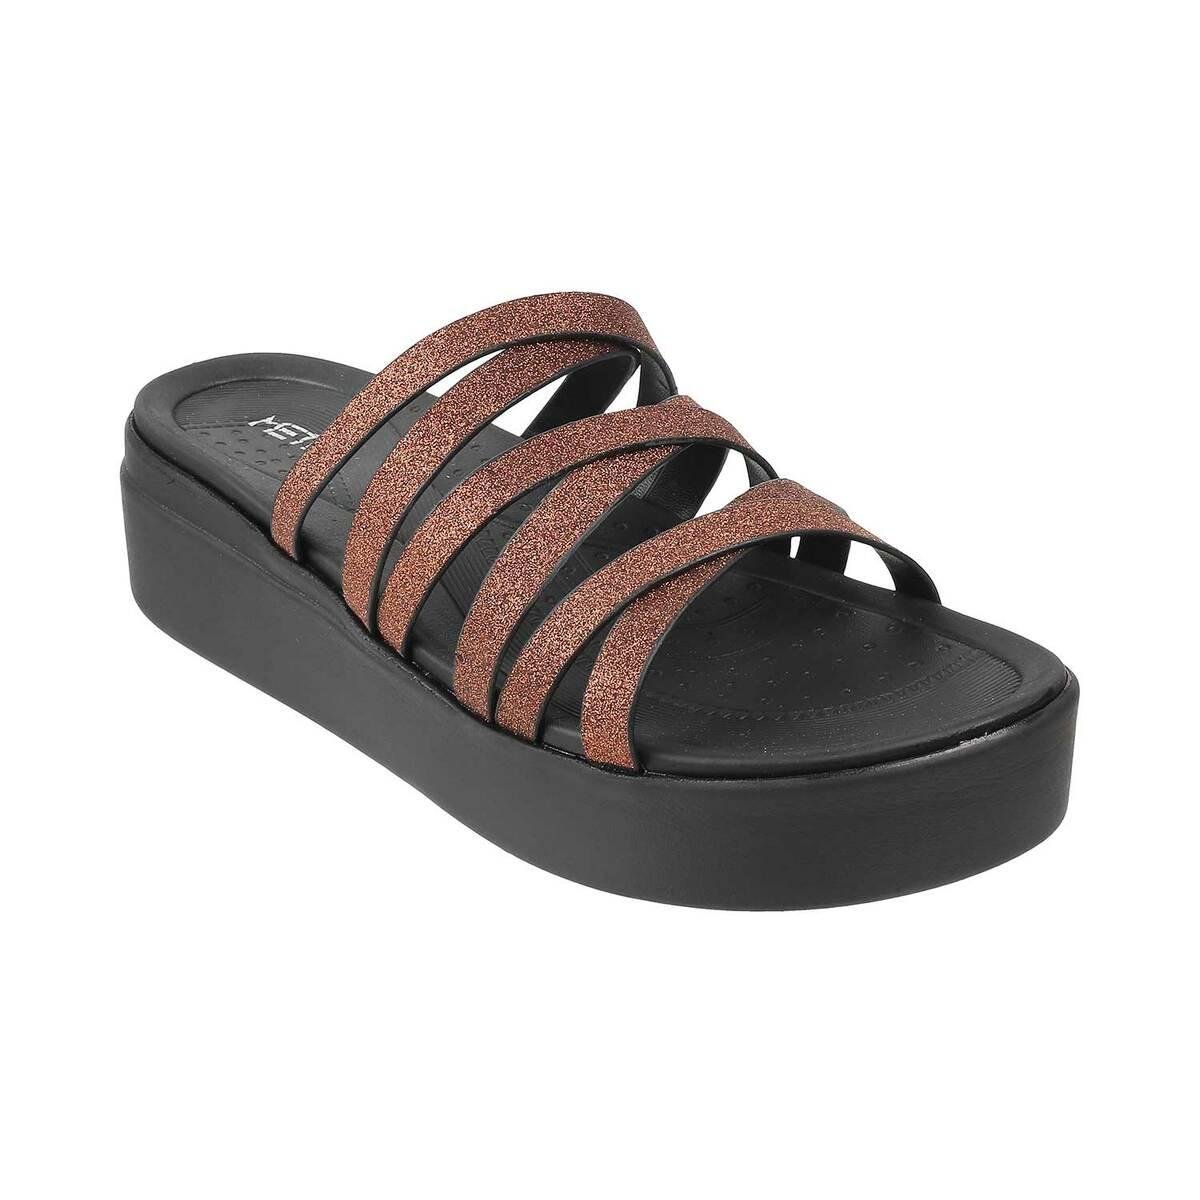 Buy Metro Sandals Online In India | Metro Shoes